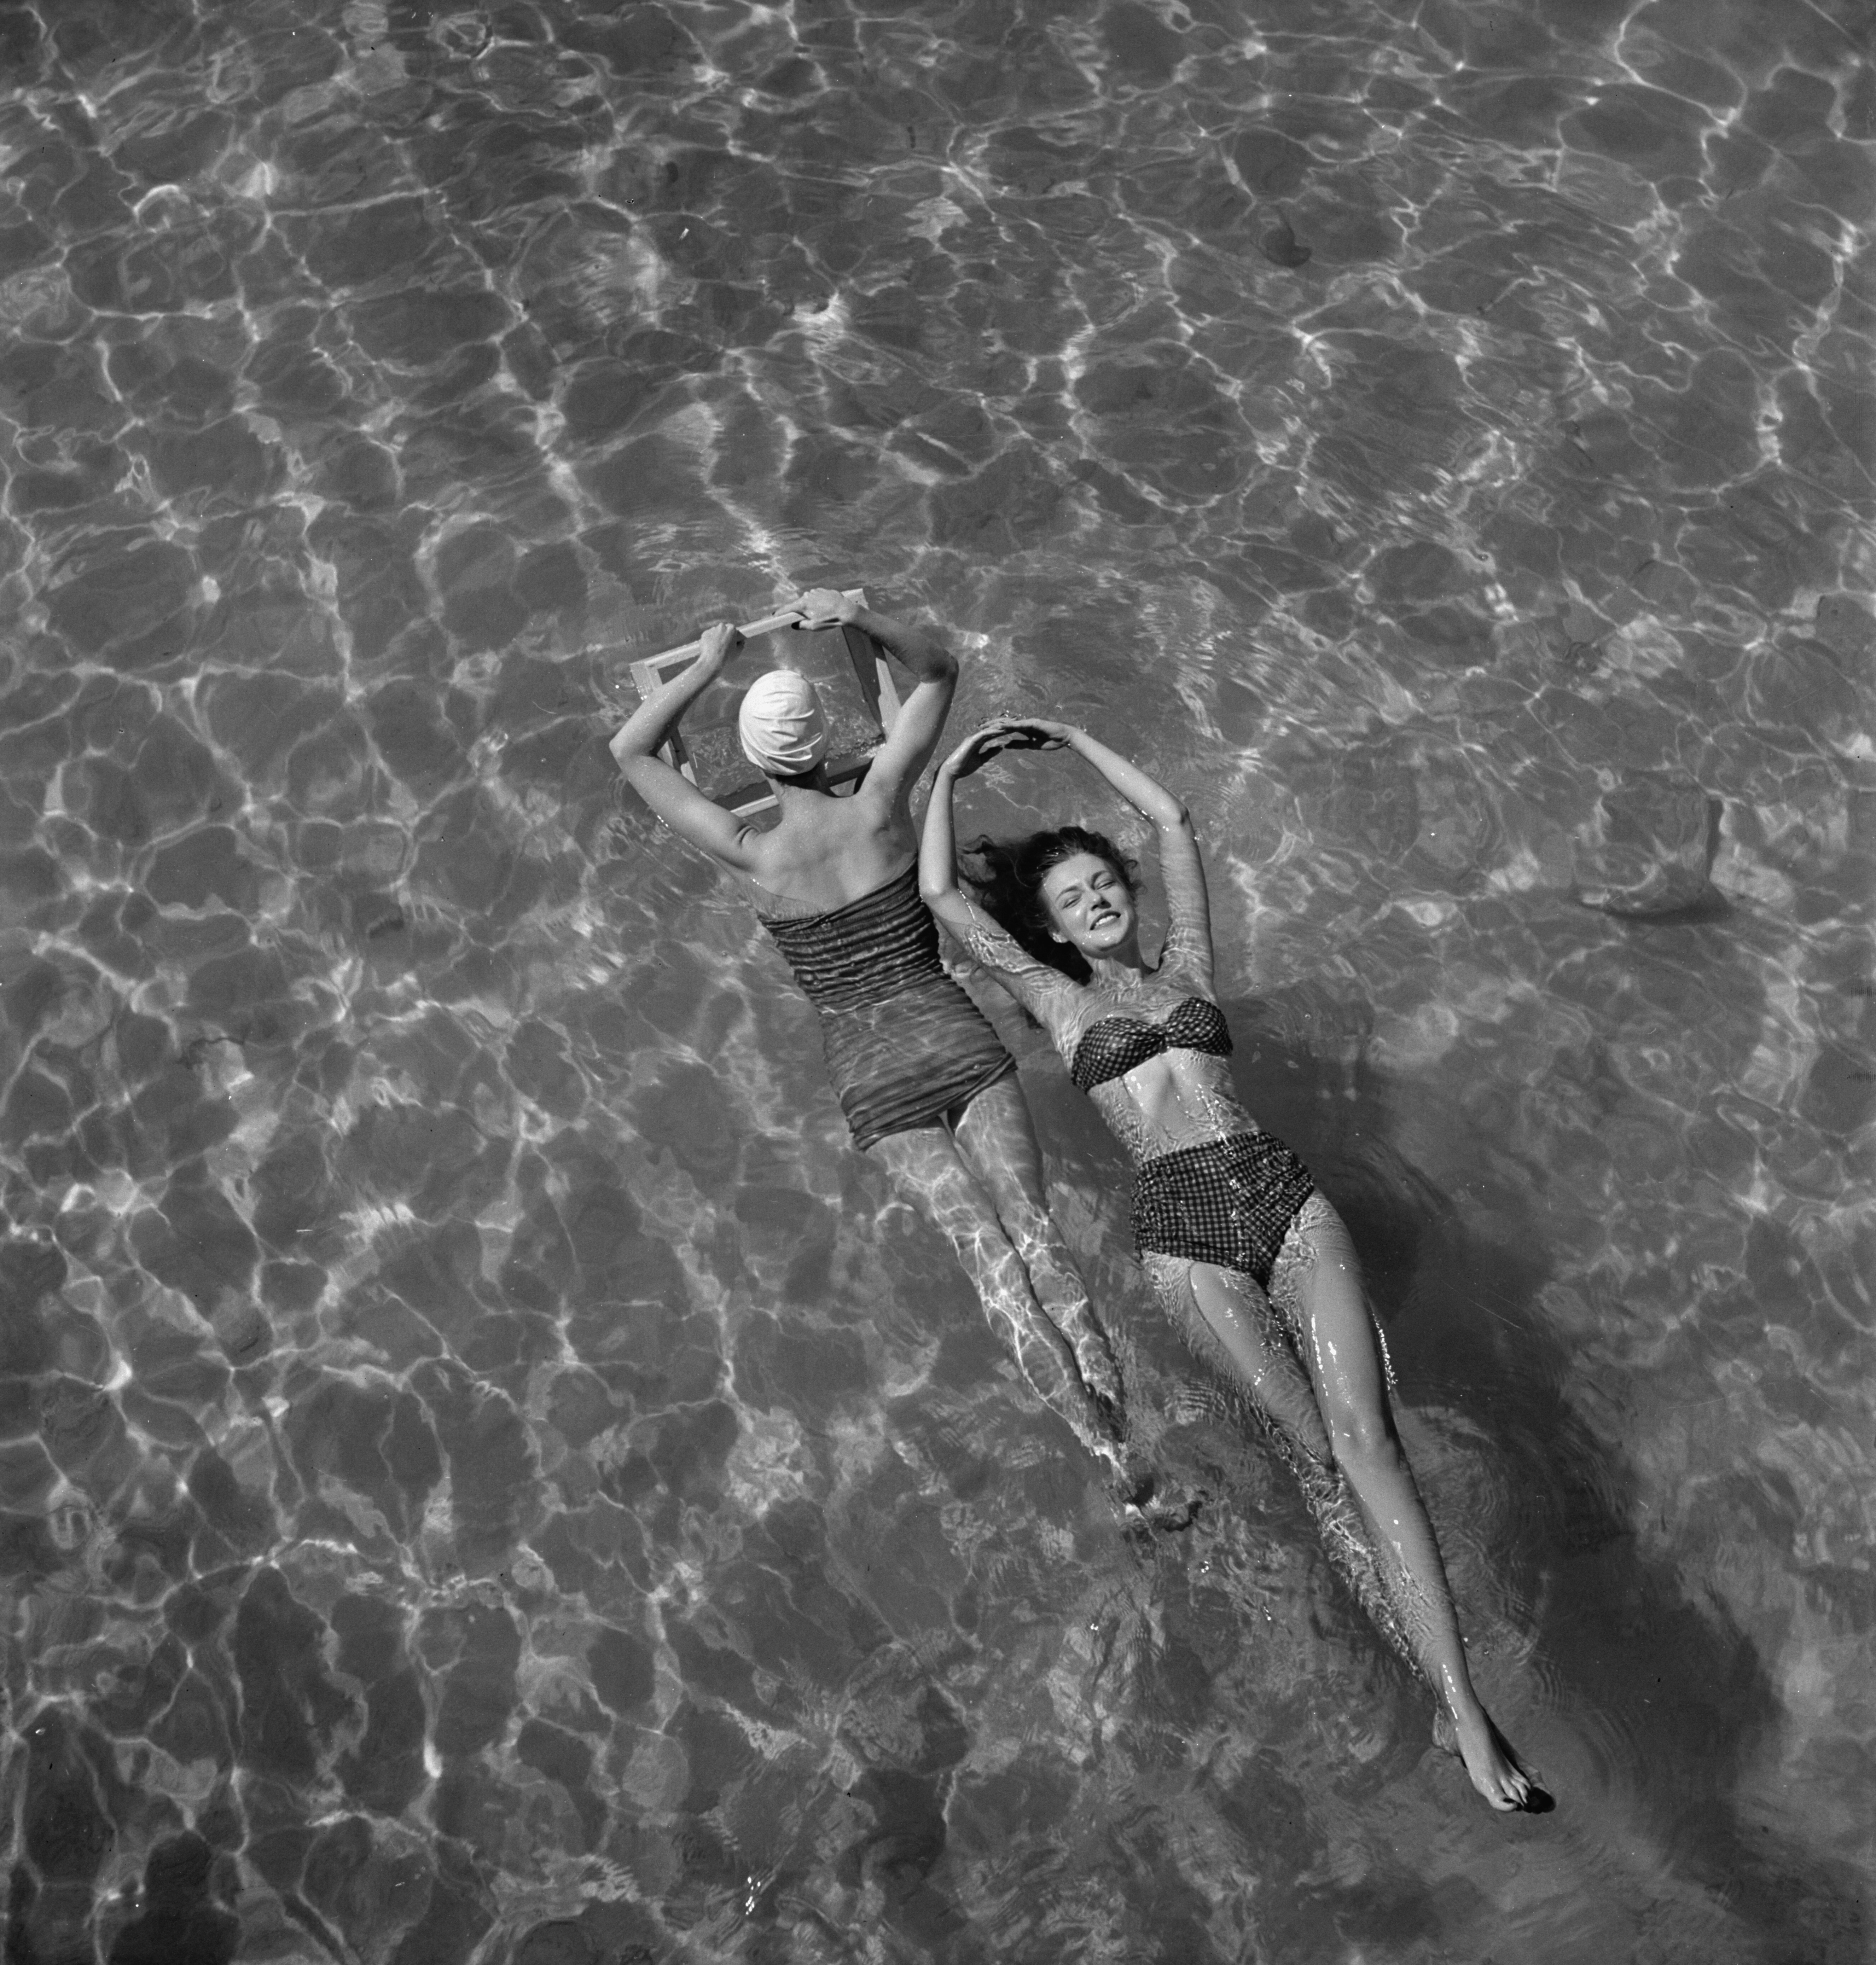 Модели в купальниках плавают в бассейне, 1948. Фотограф Тони Фрисселл